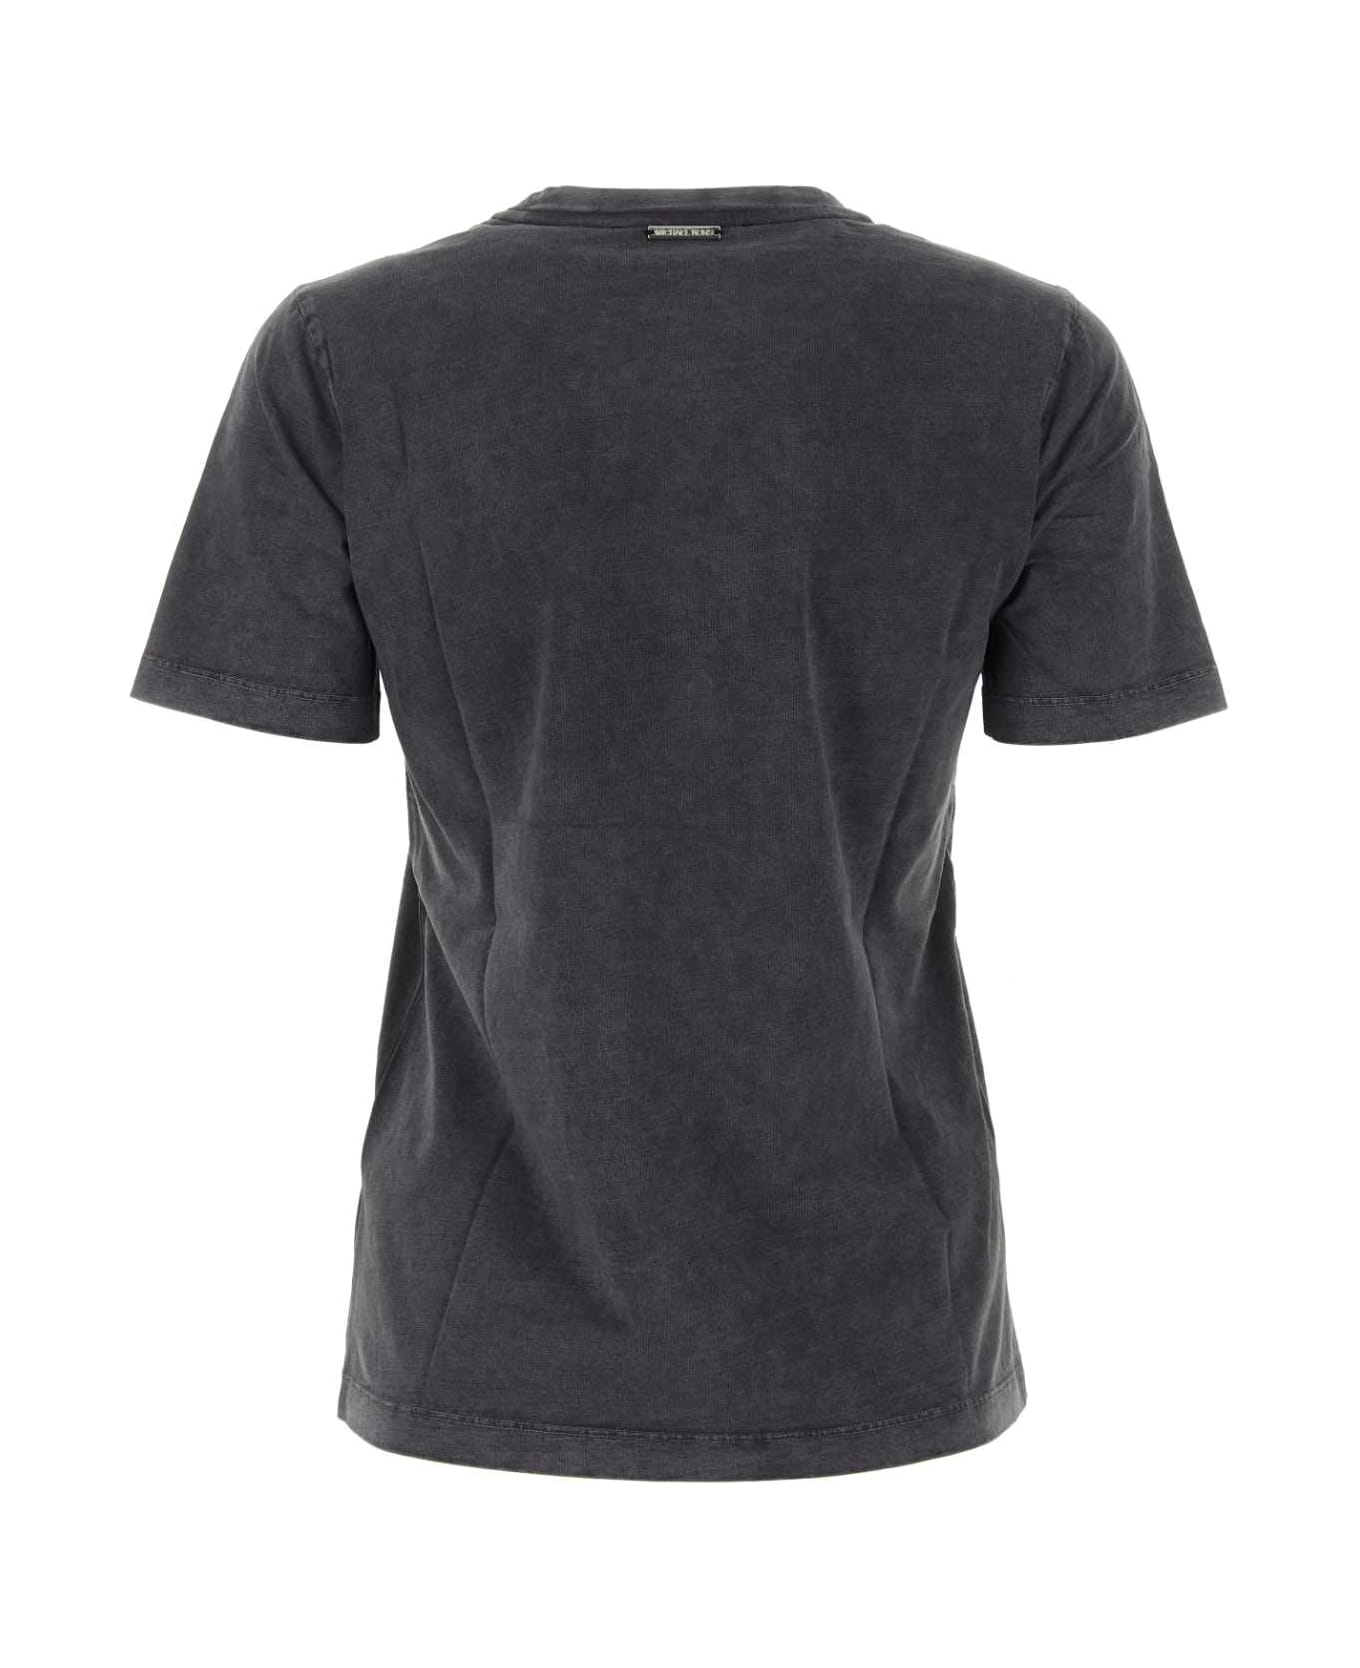 Michael Kors Black Cotton T-shirt - BLACK